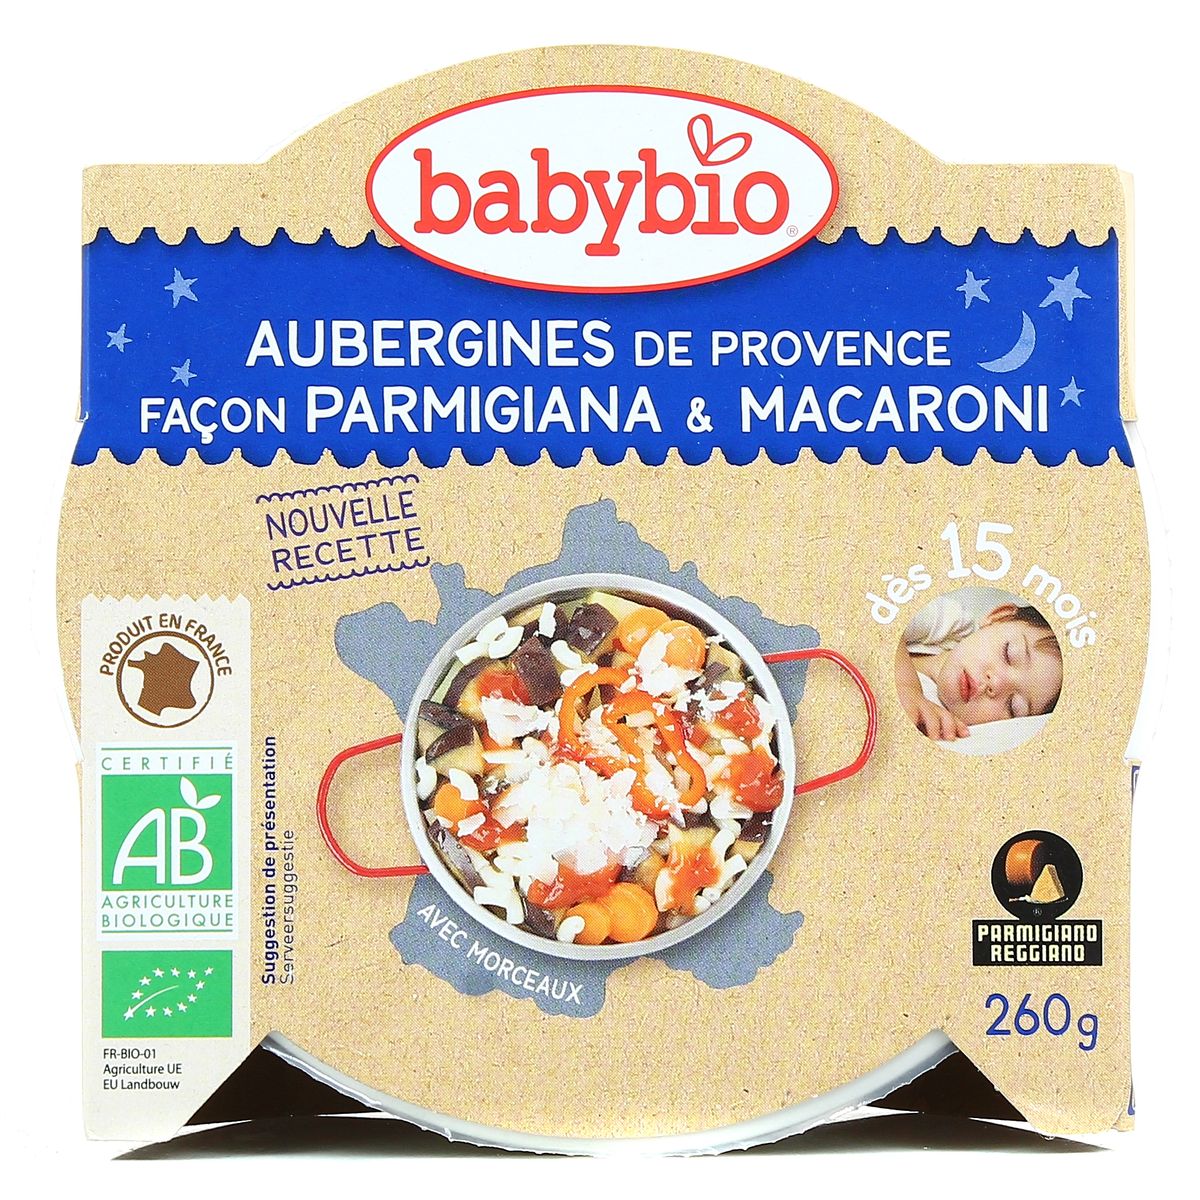 BabyBio Assiette Aubergine Permigiana Macaroni BabyBio 260 g 